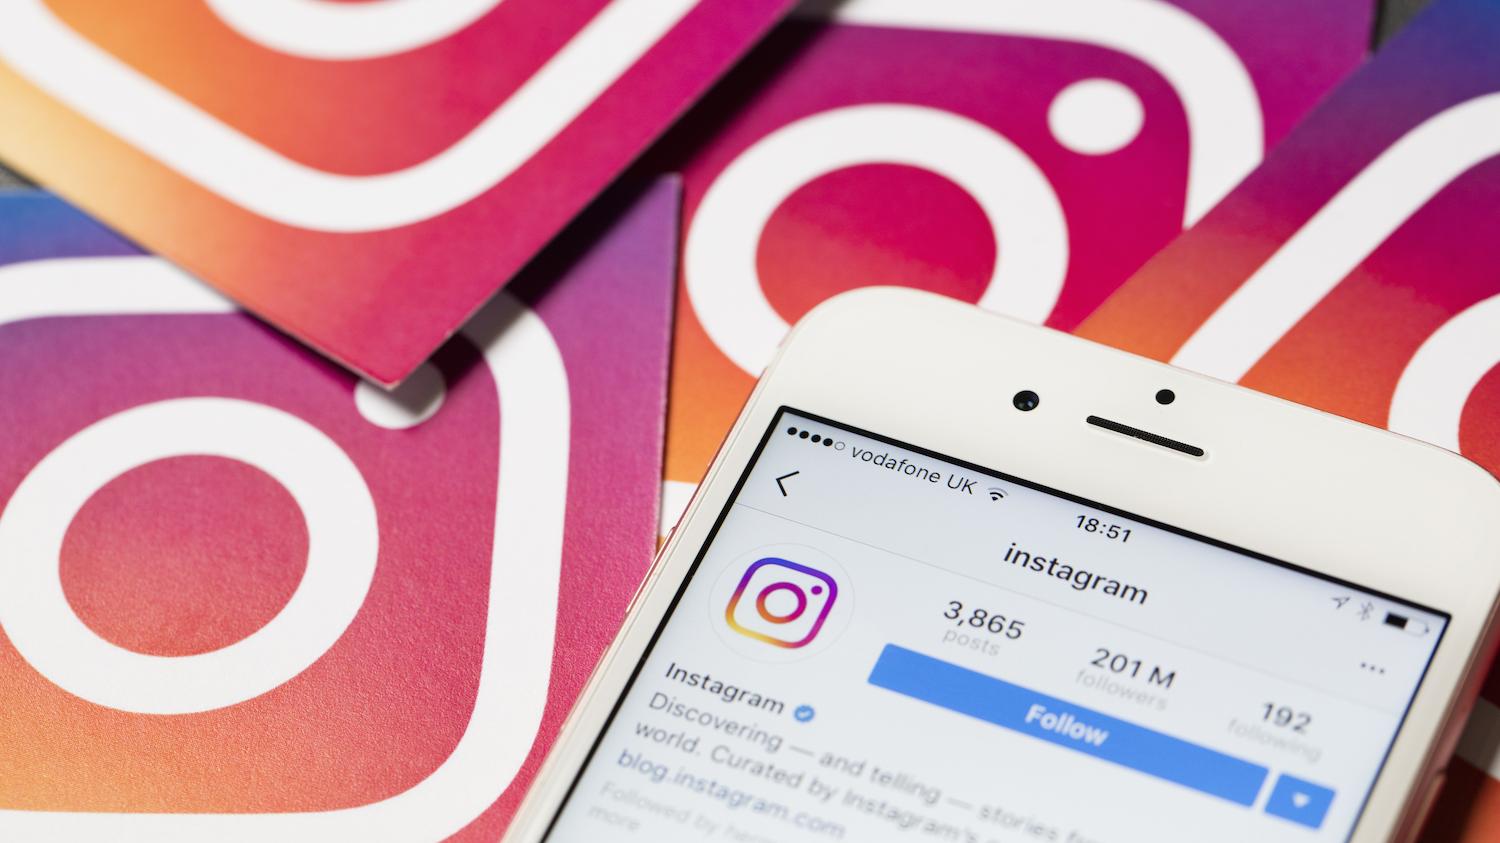 Instagram reconoce tener un problema eliminando las publicaciones de autolesiones